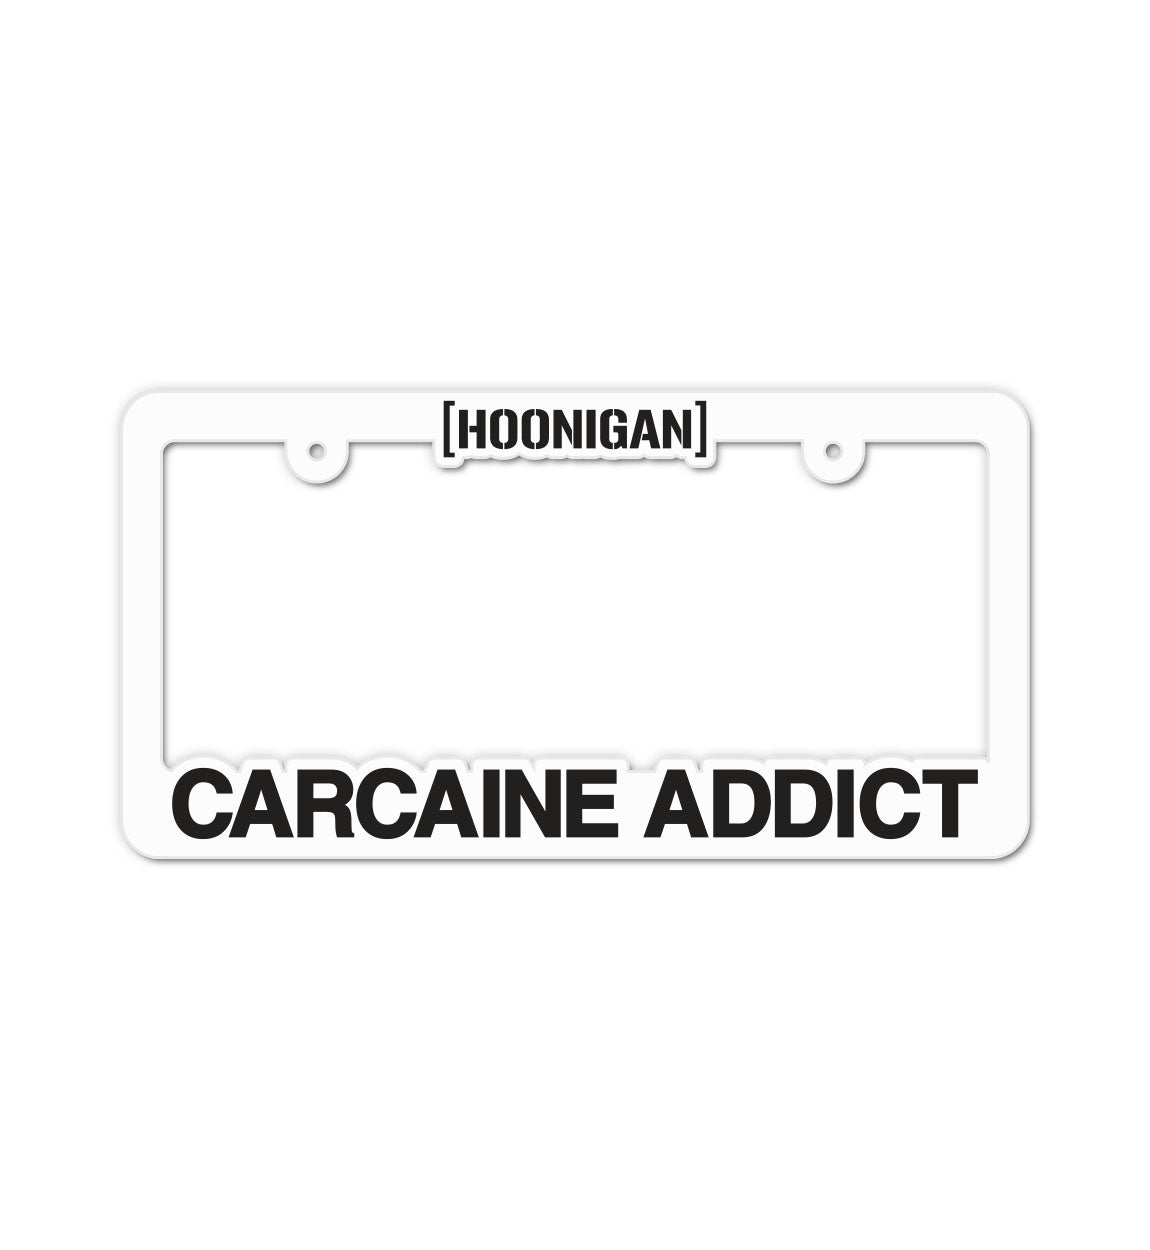 CARCAINE ADDICT plate frame